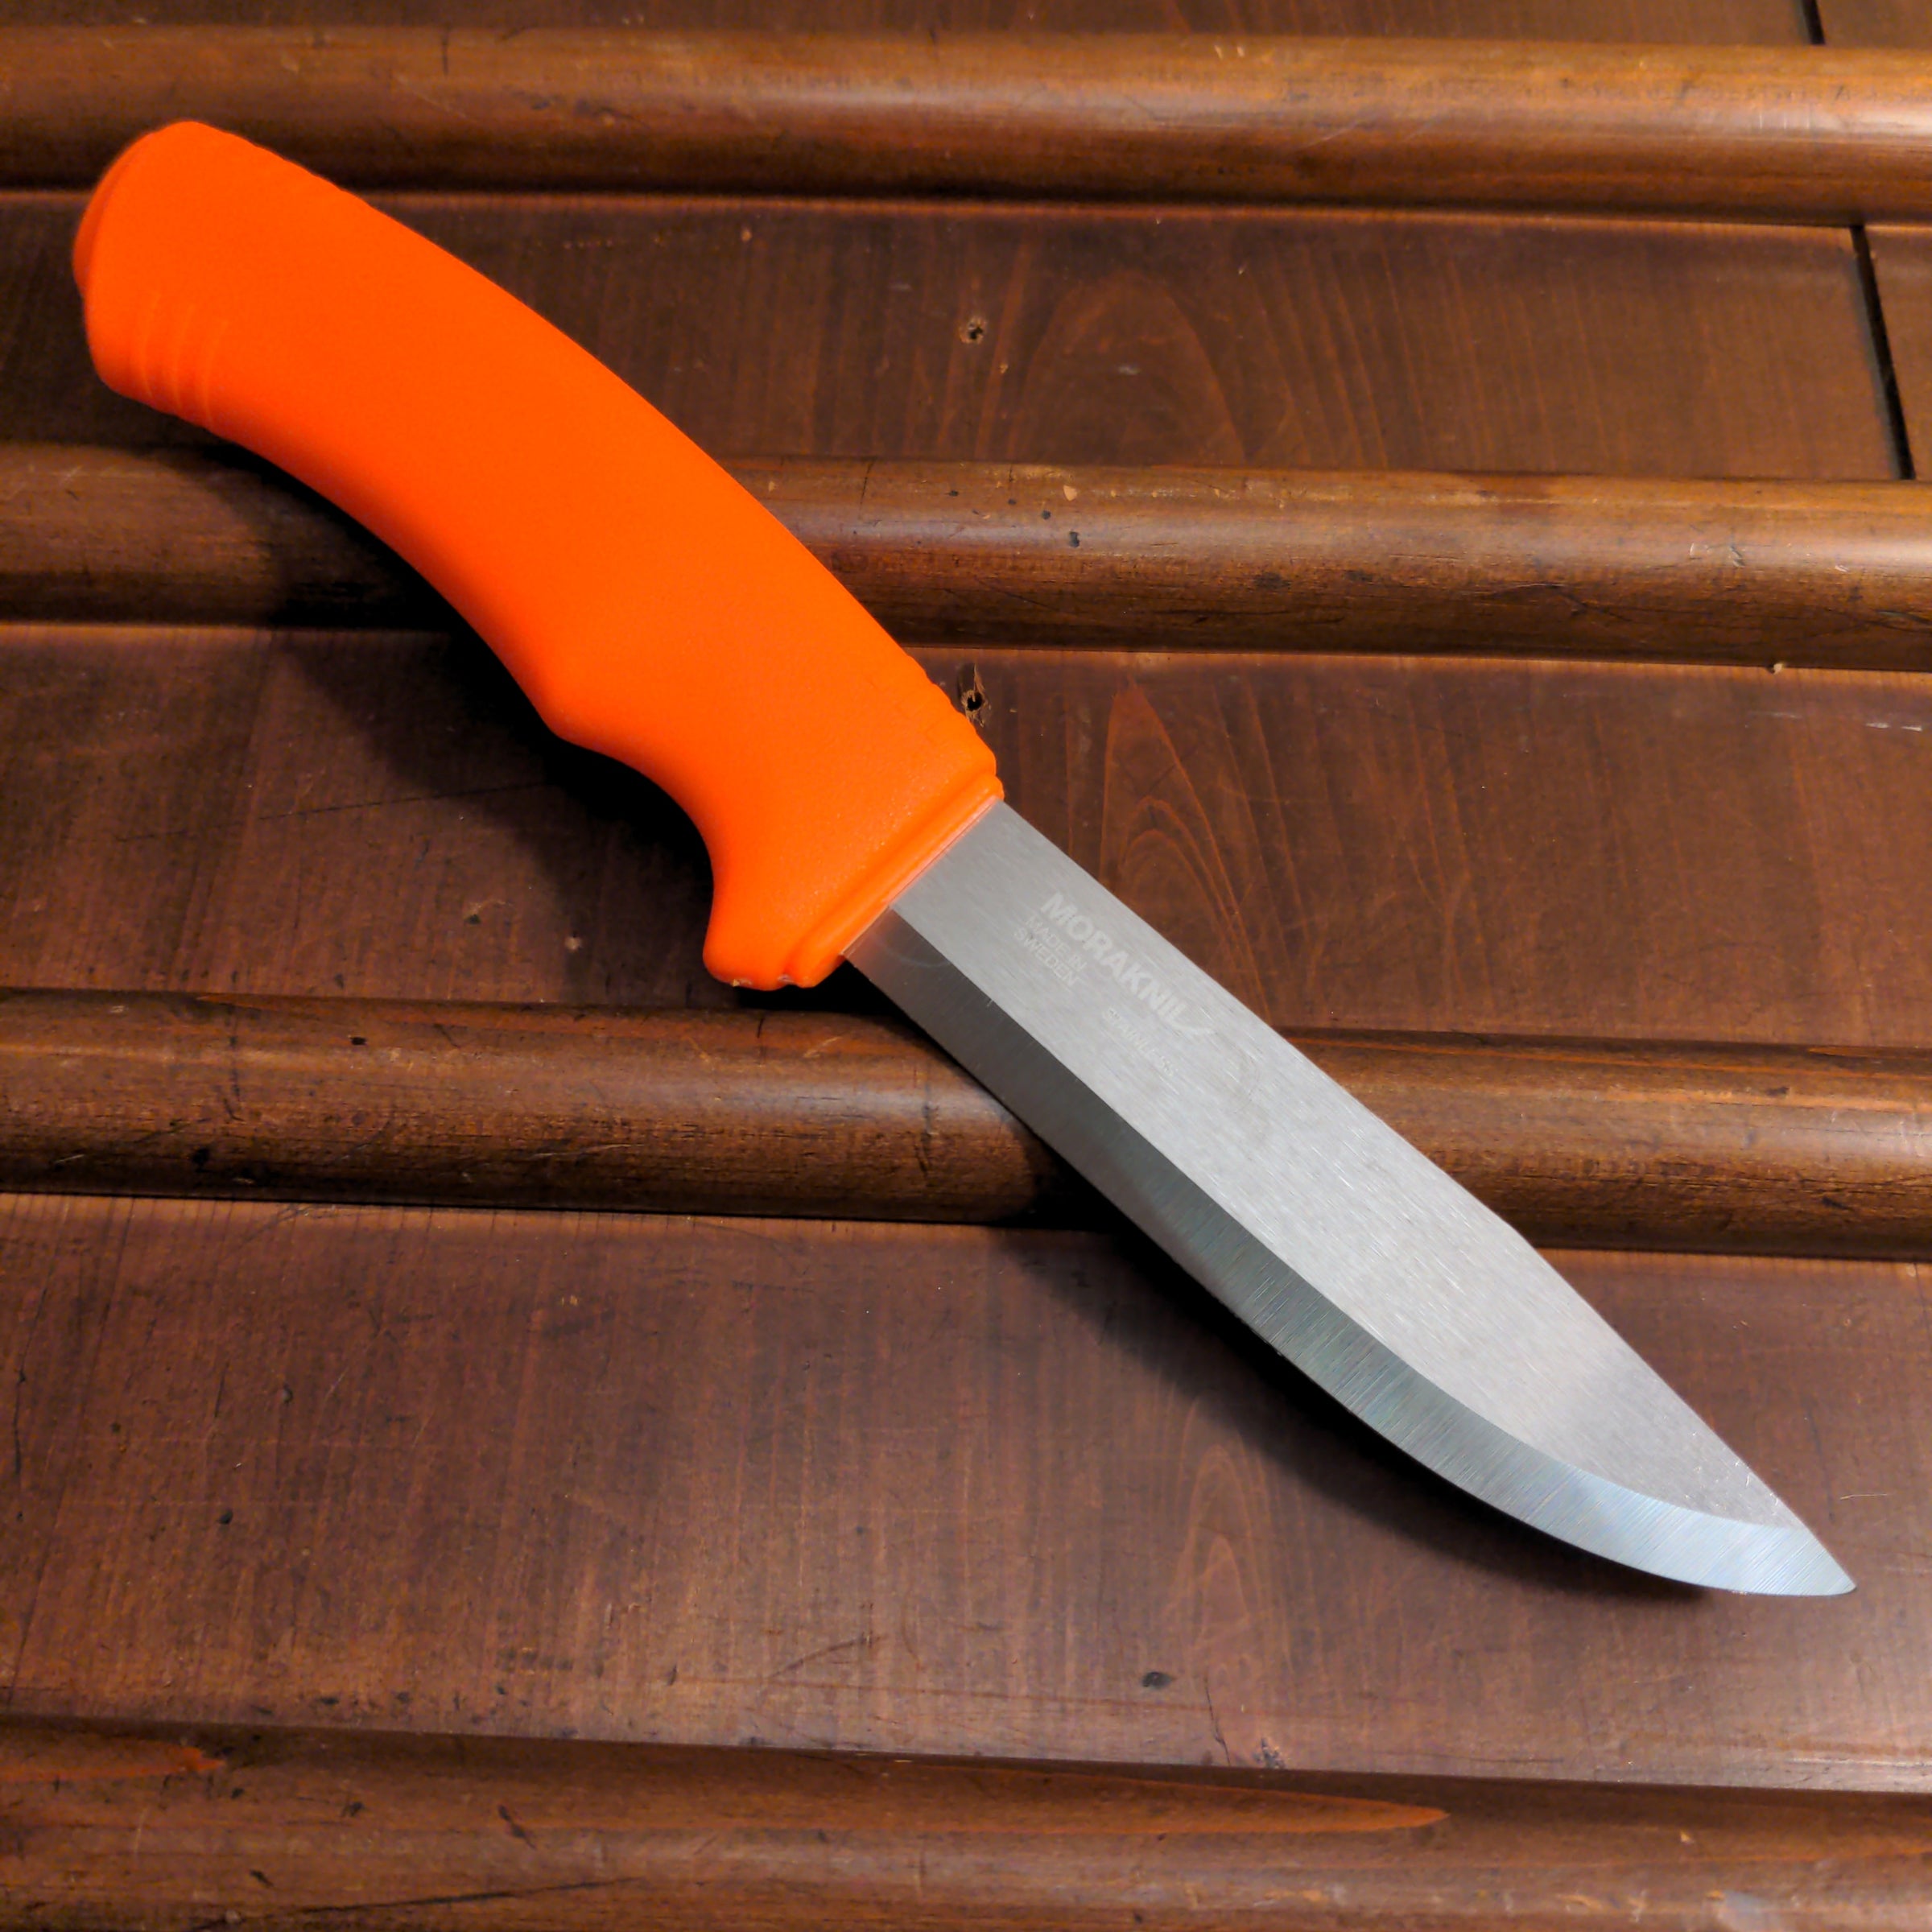 Morakniv Bushcraft Survival Black   - knives, sharpeners, axes